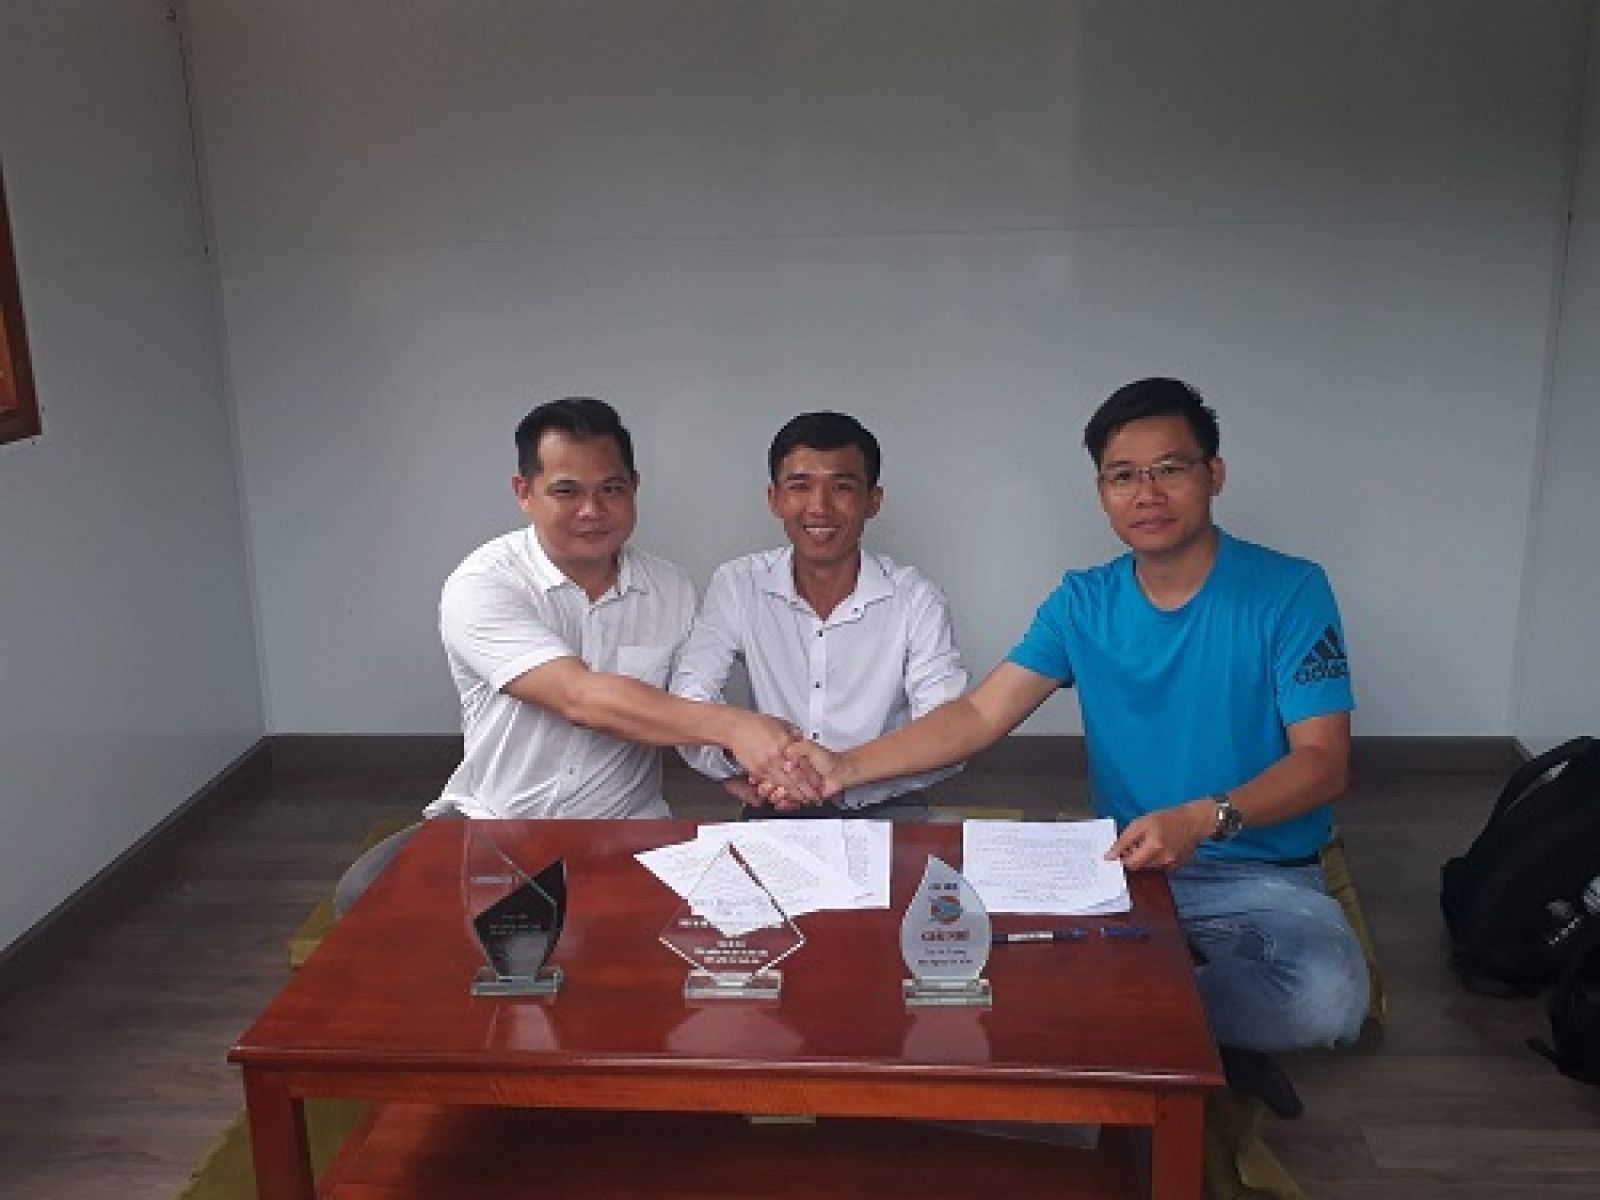 Trong gian phòng khách của nhà nổi, Nguyễn Minh Hoàng (giữa) và 2 doanh nhân ký kết hợp đồng đầu tư. Ảnh: Hà Thế An.